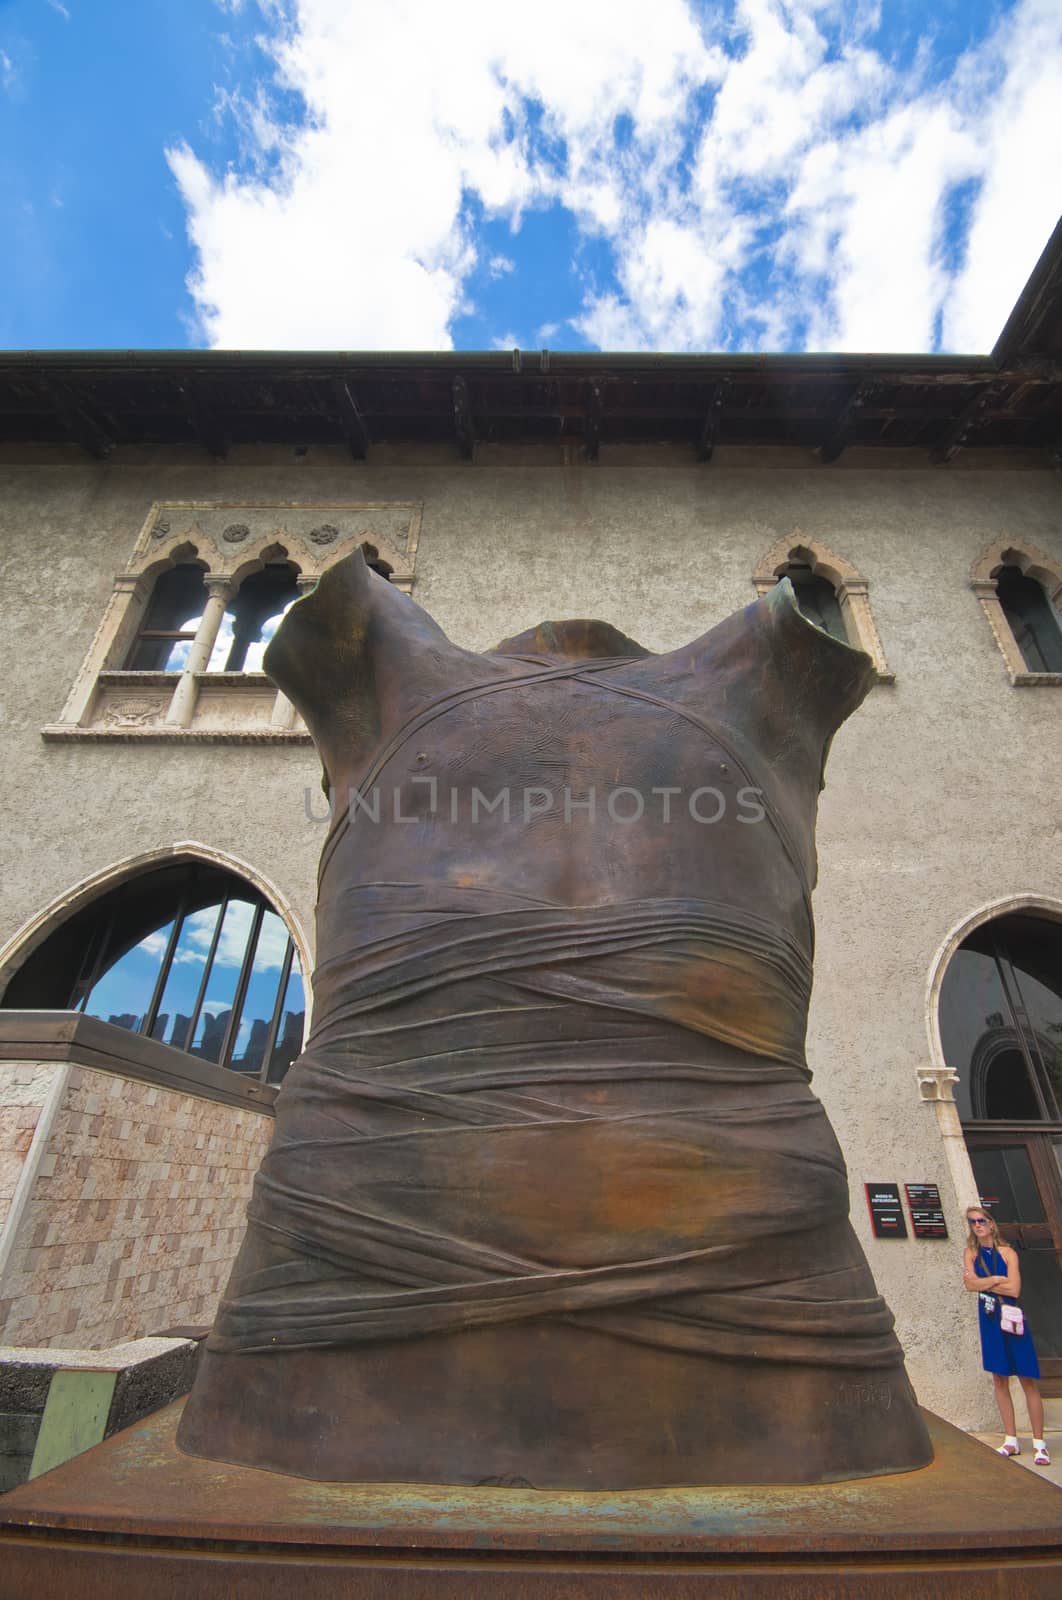 Castelvecchio Par in Verona by Yorgy67